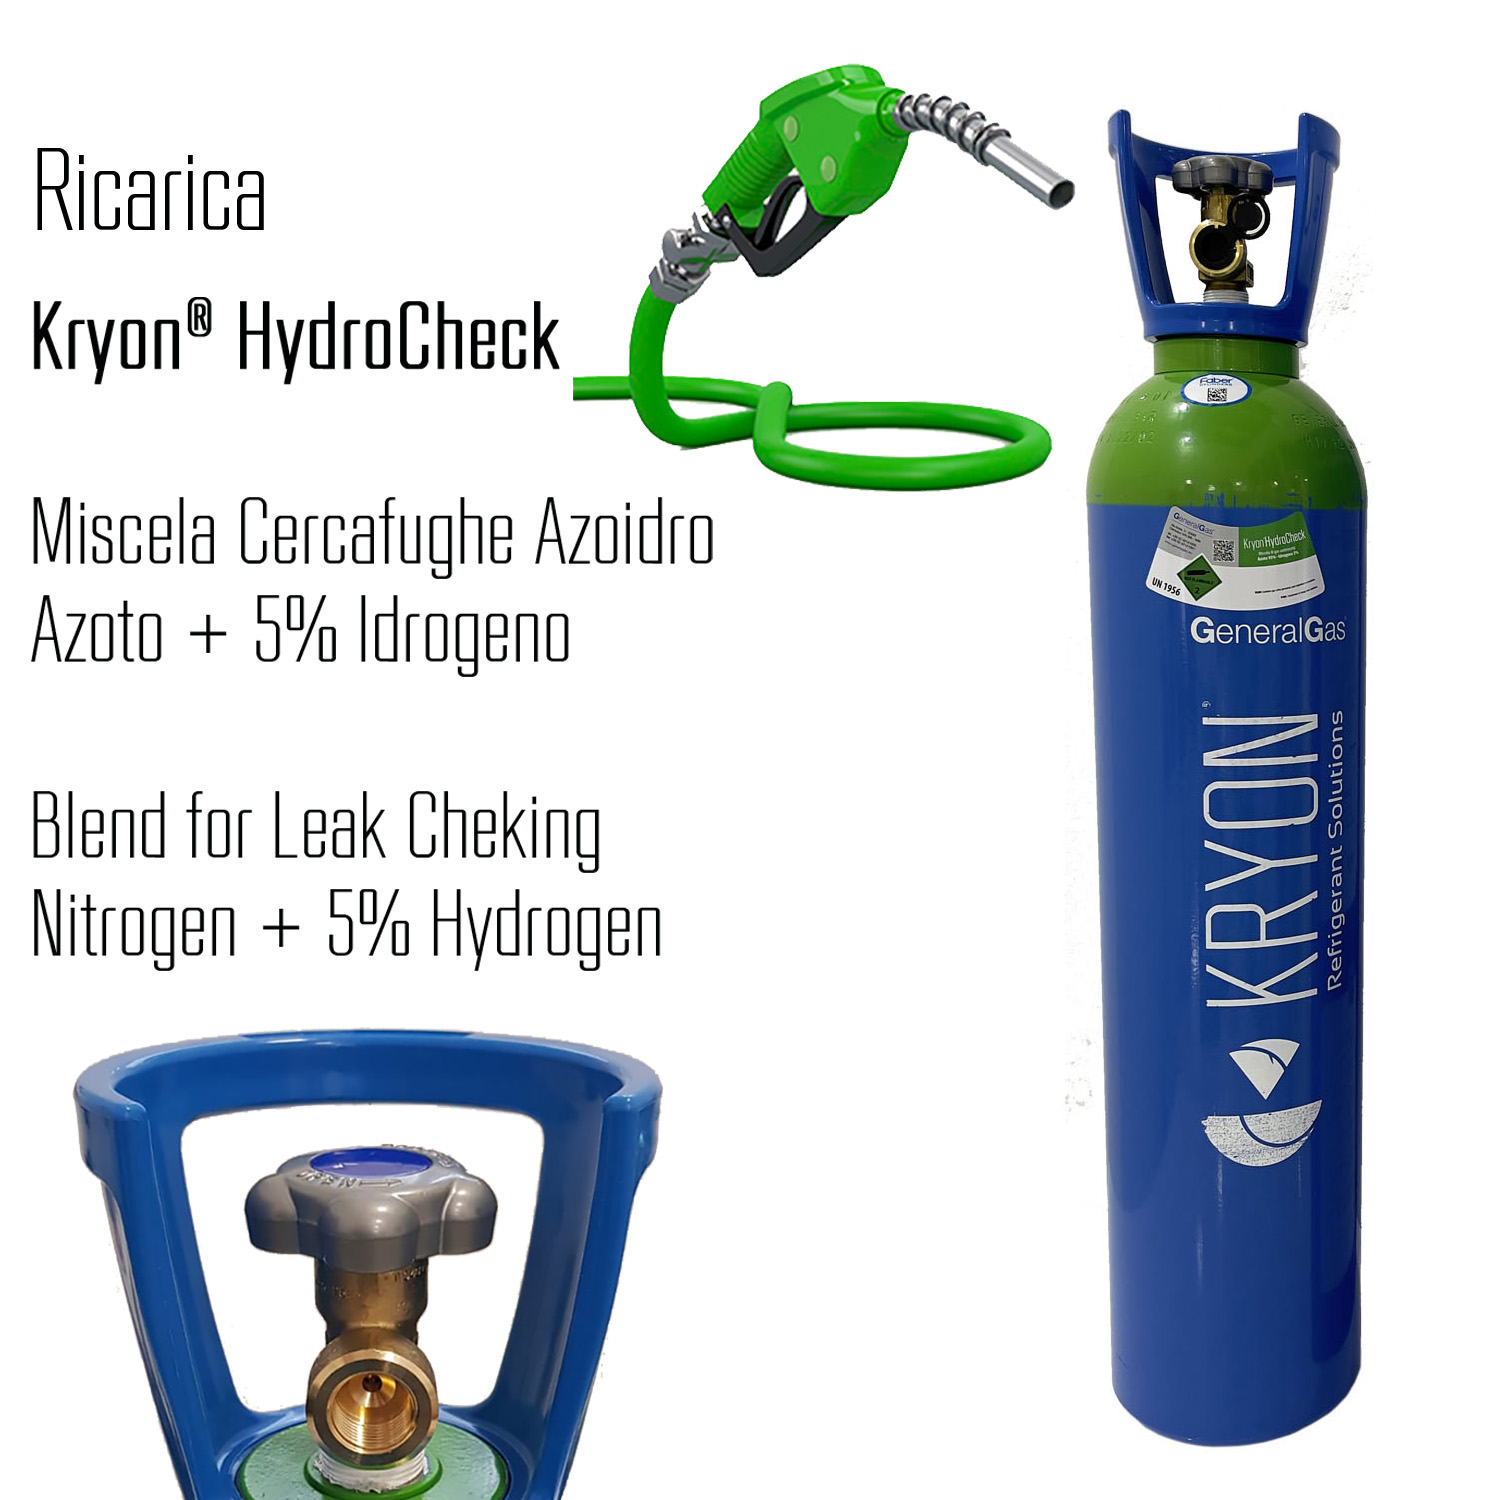 Kryon® HydroCheck - ricarica per bombola 14 litri - 3 mc - azoto 5% idrogeno (miscela cercafughe azoidro)